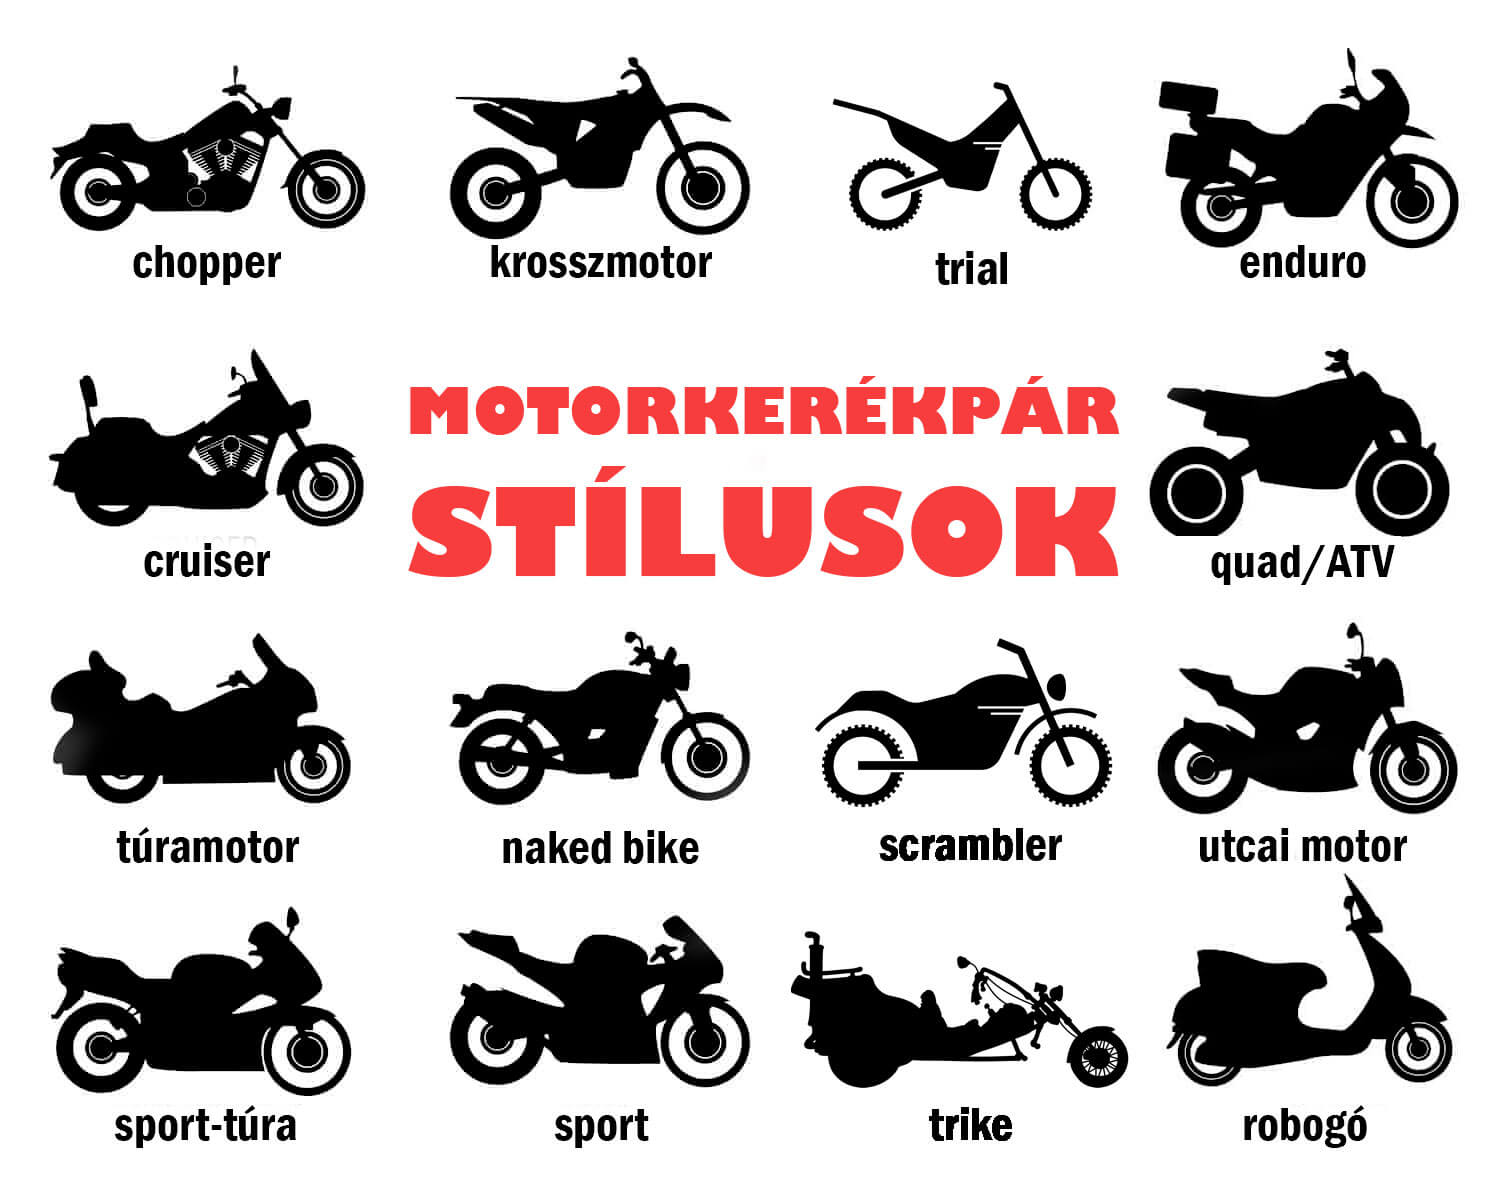 Motorkerékpár stílusok